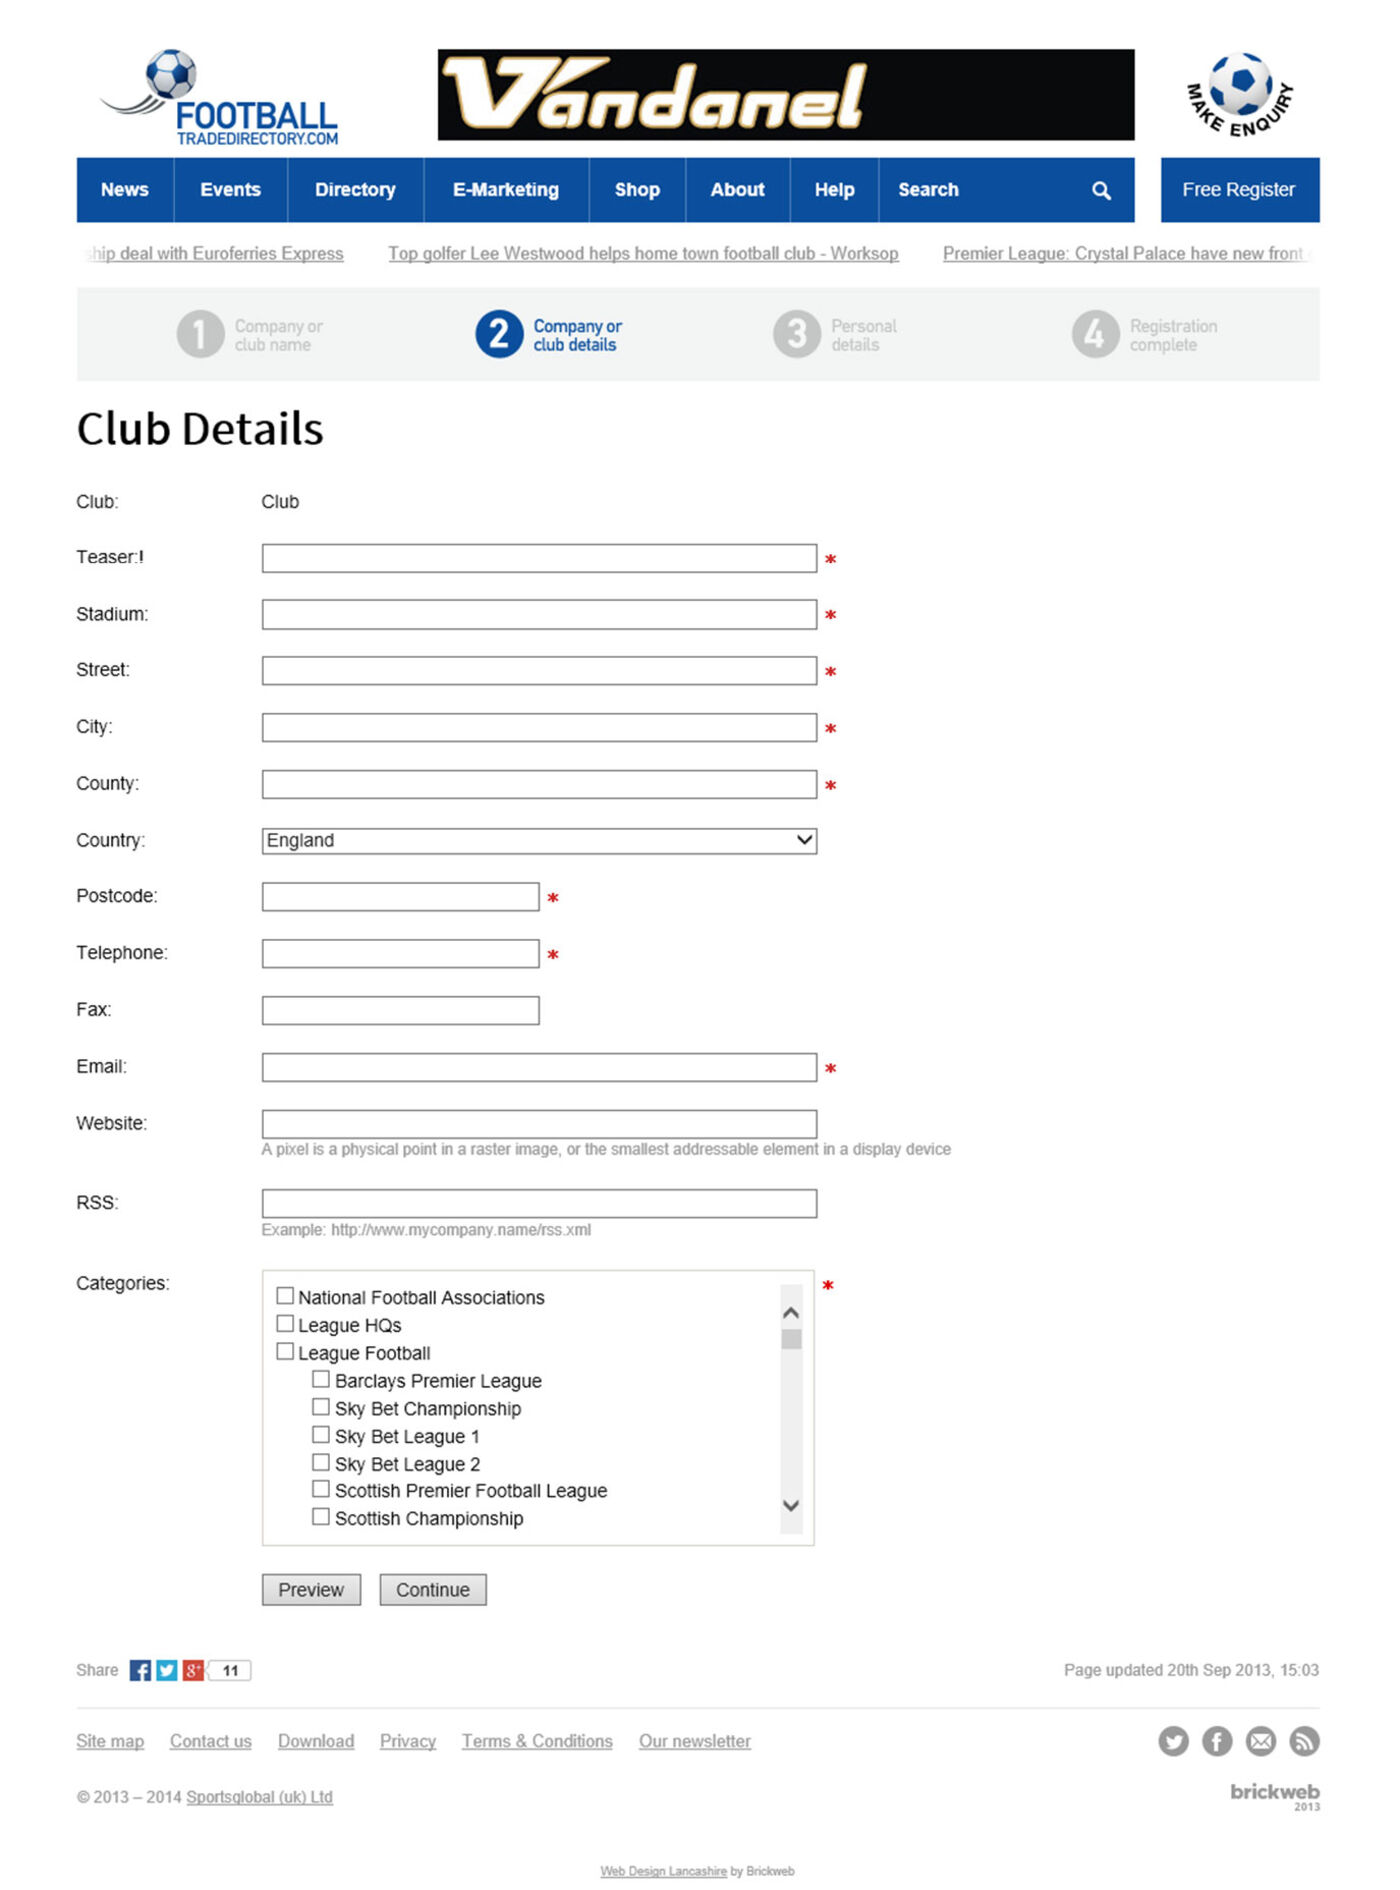 Football Trade Directory (2014) Register form